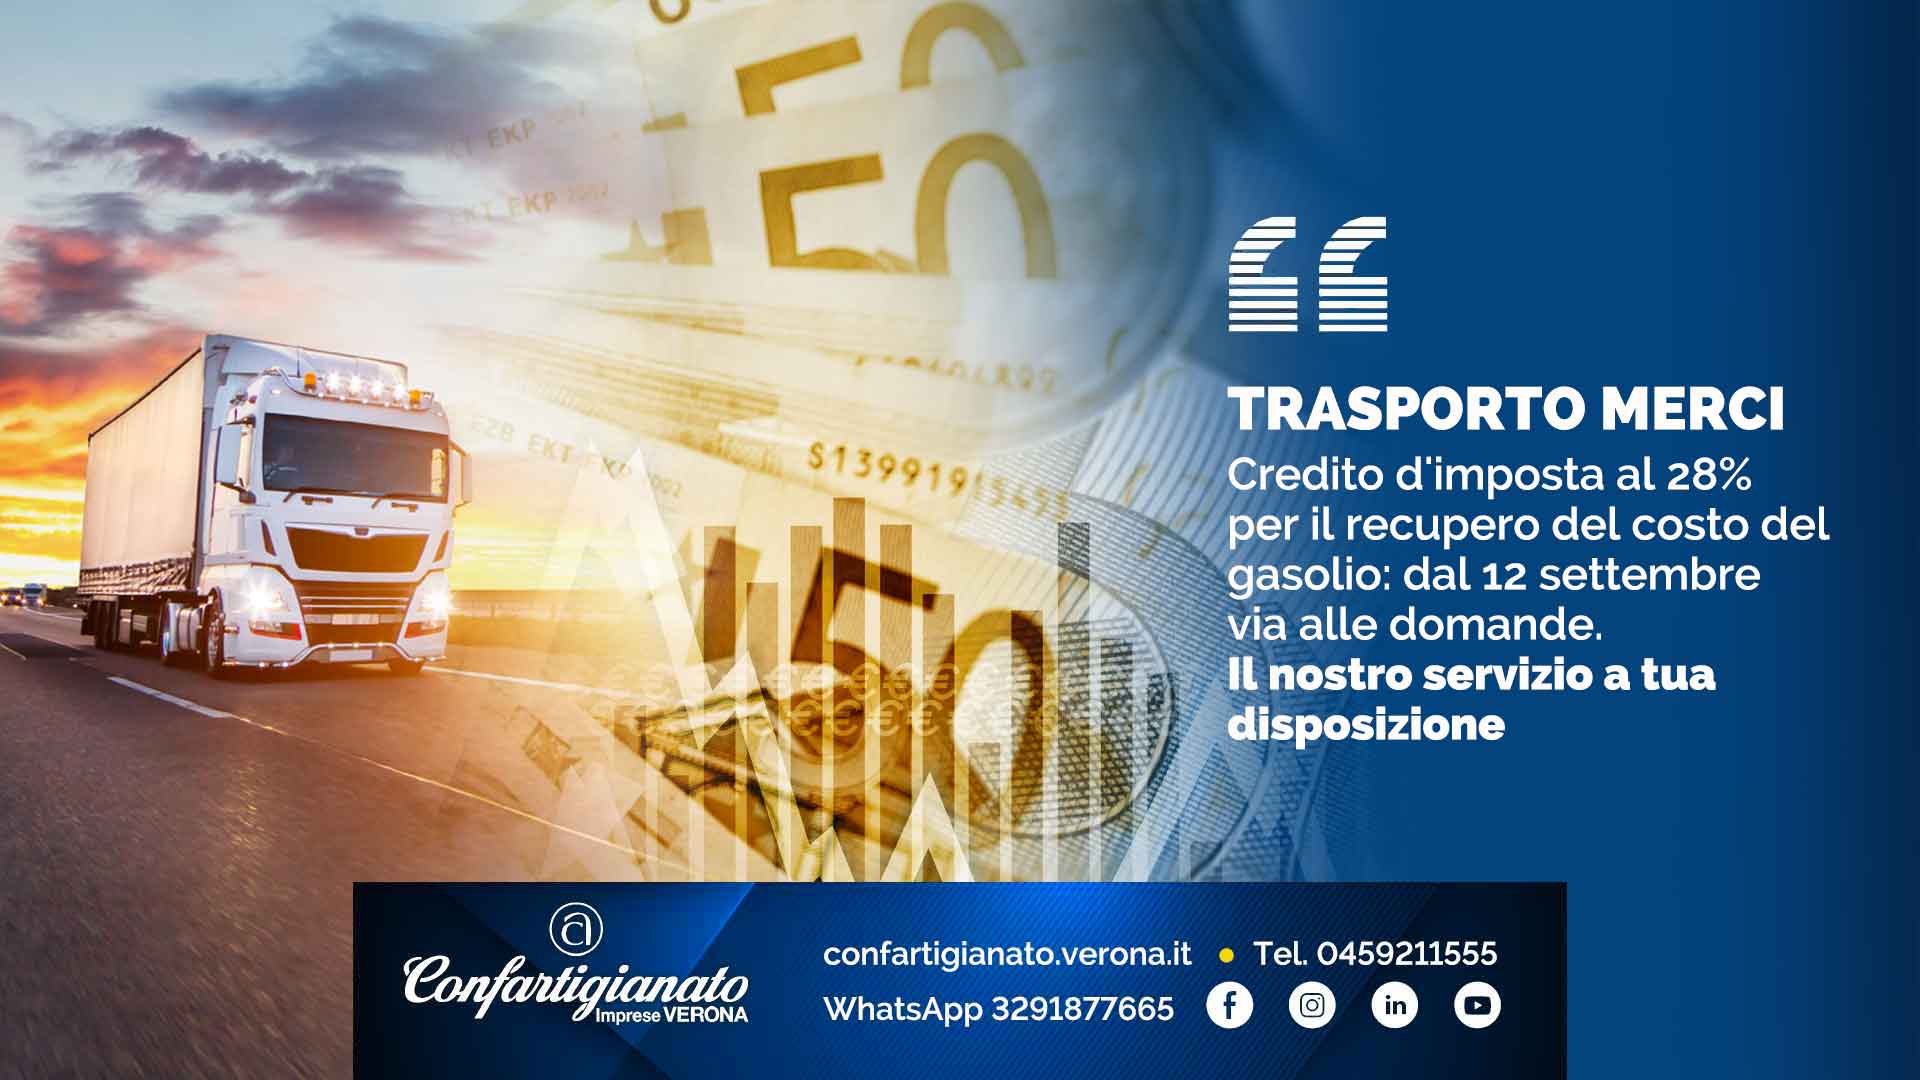 TRASPORTO MERCI – Credito d'imposta al 28% per il recupero del costo del gasolio: dal 12 settembre via alle domande. Il nostro servizio a tua disposizione